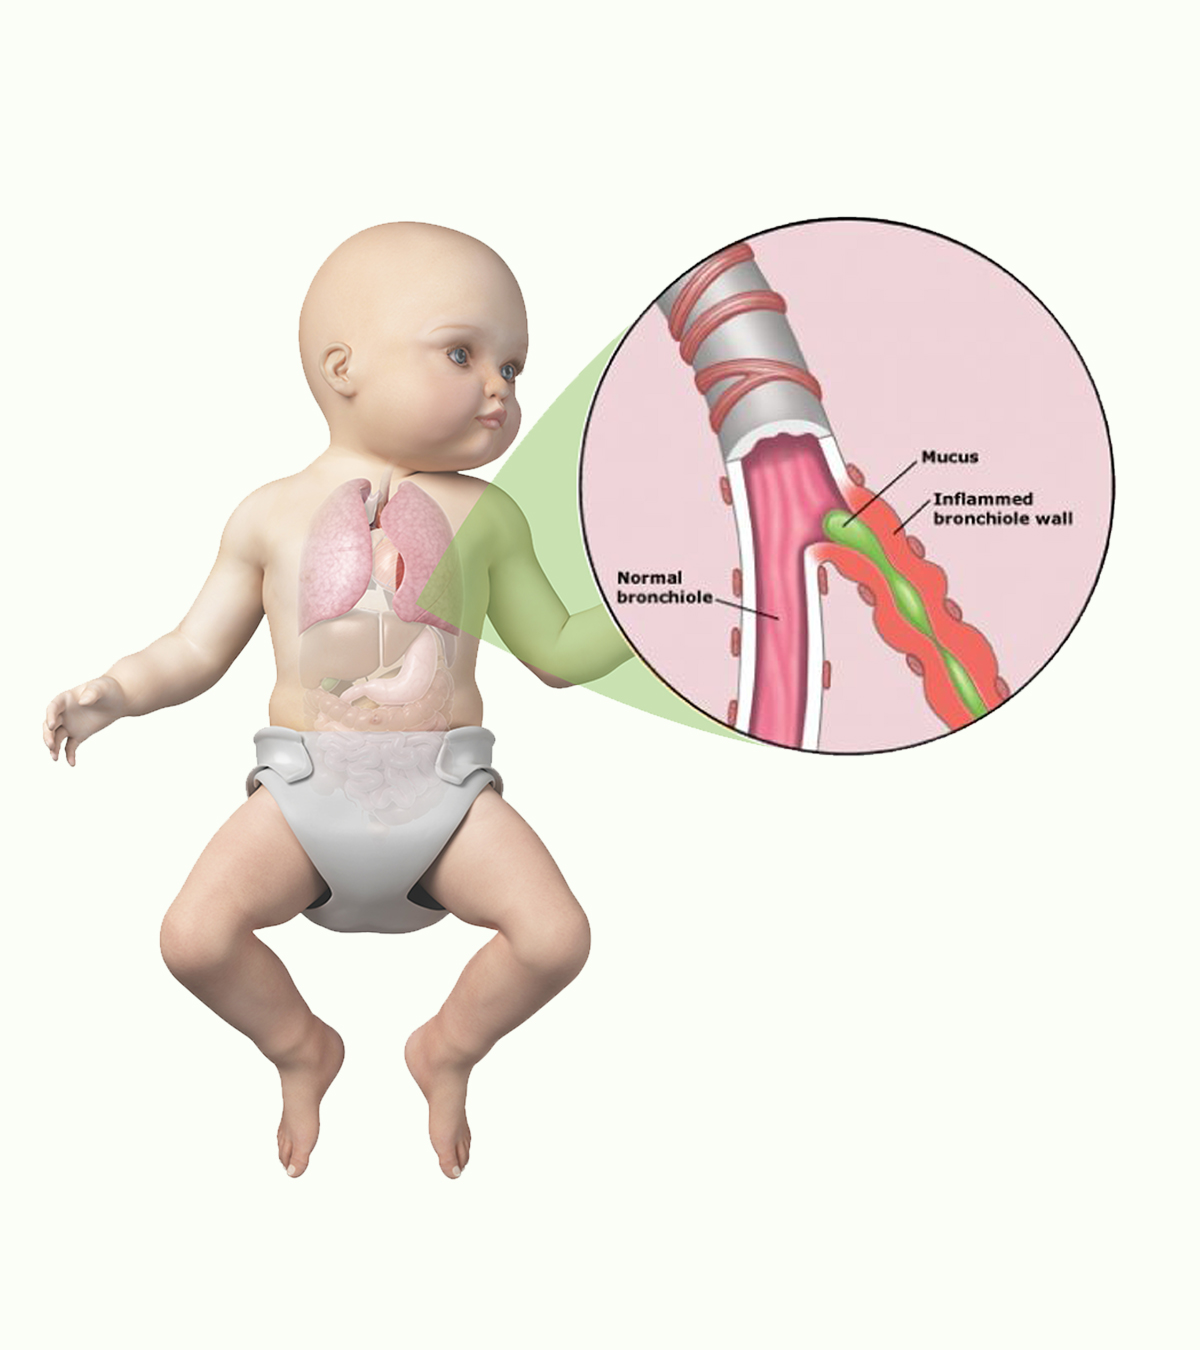 婴儿毛细支气管炎:症状、诊断和治疗